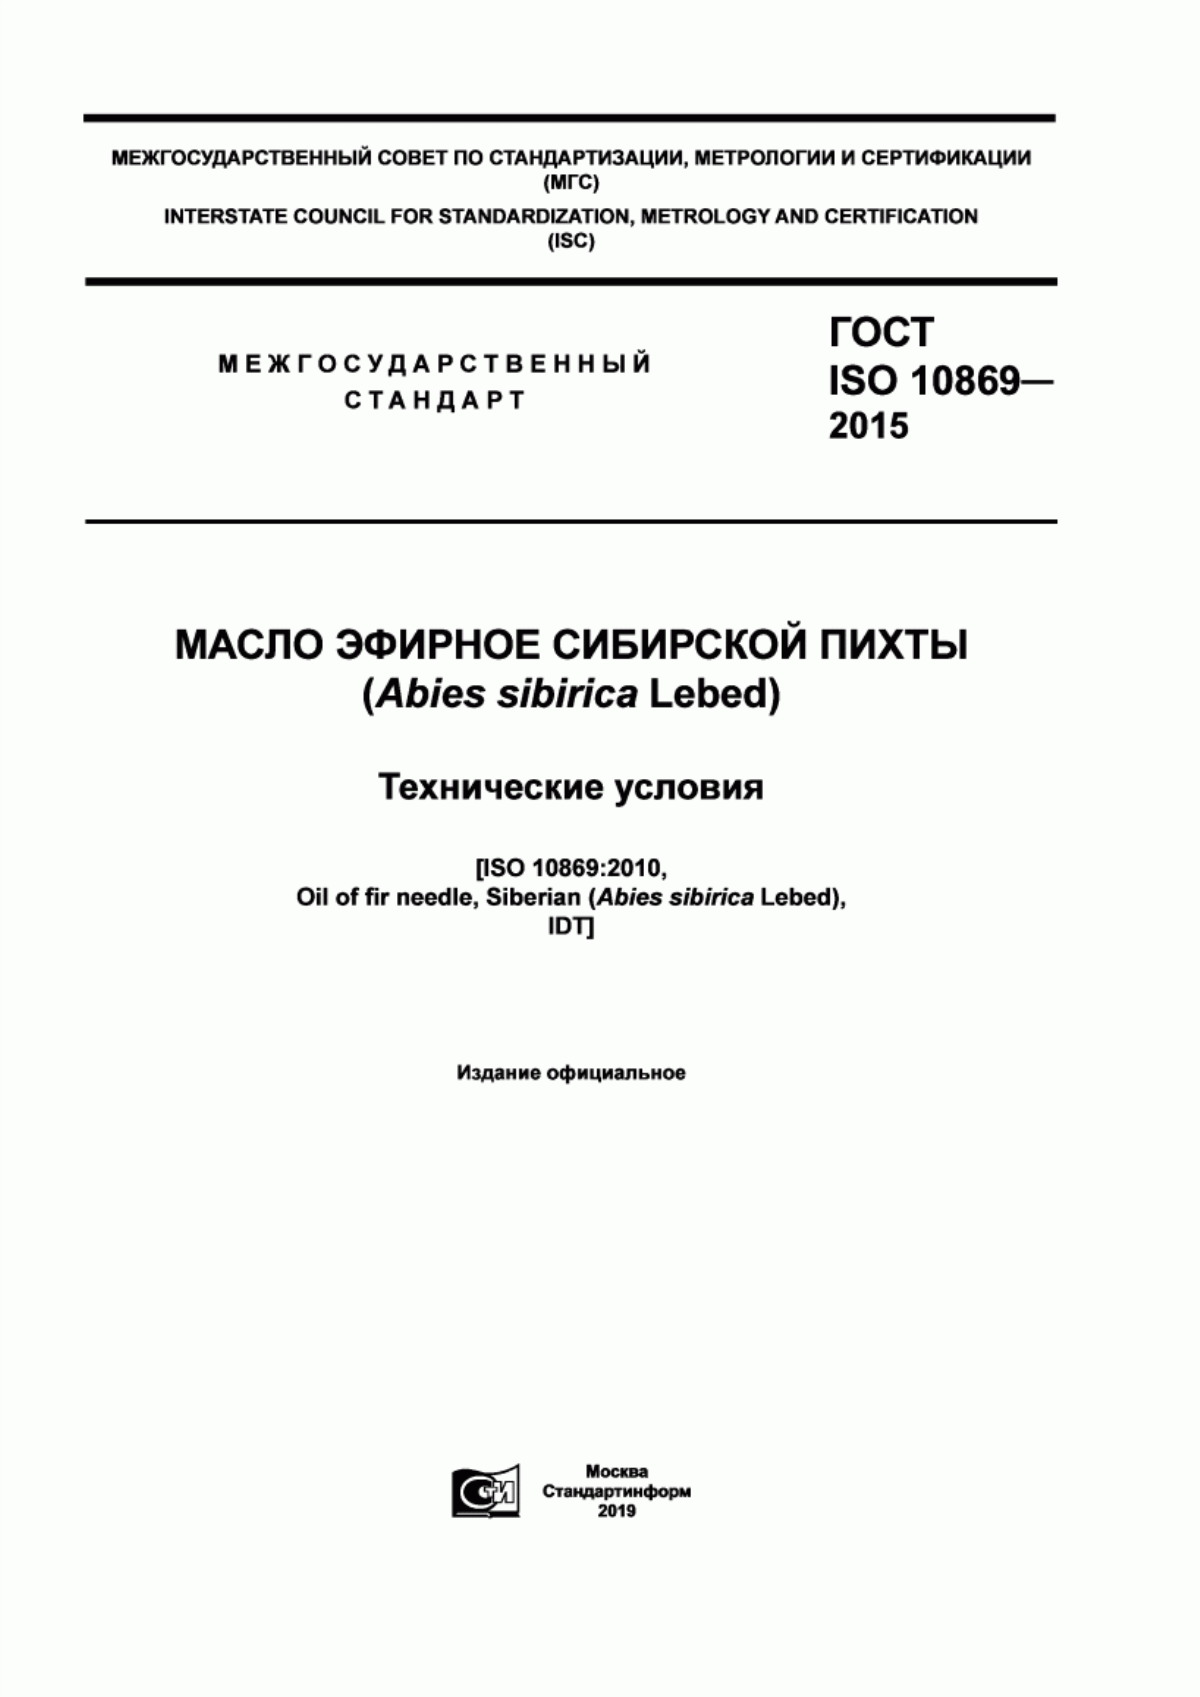 ГОСТ ISO 10869-2015 Масло эфирное сибирской пихты (Abies sibirica Lebed.). Технические условия